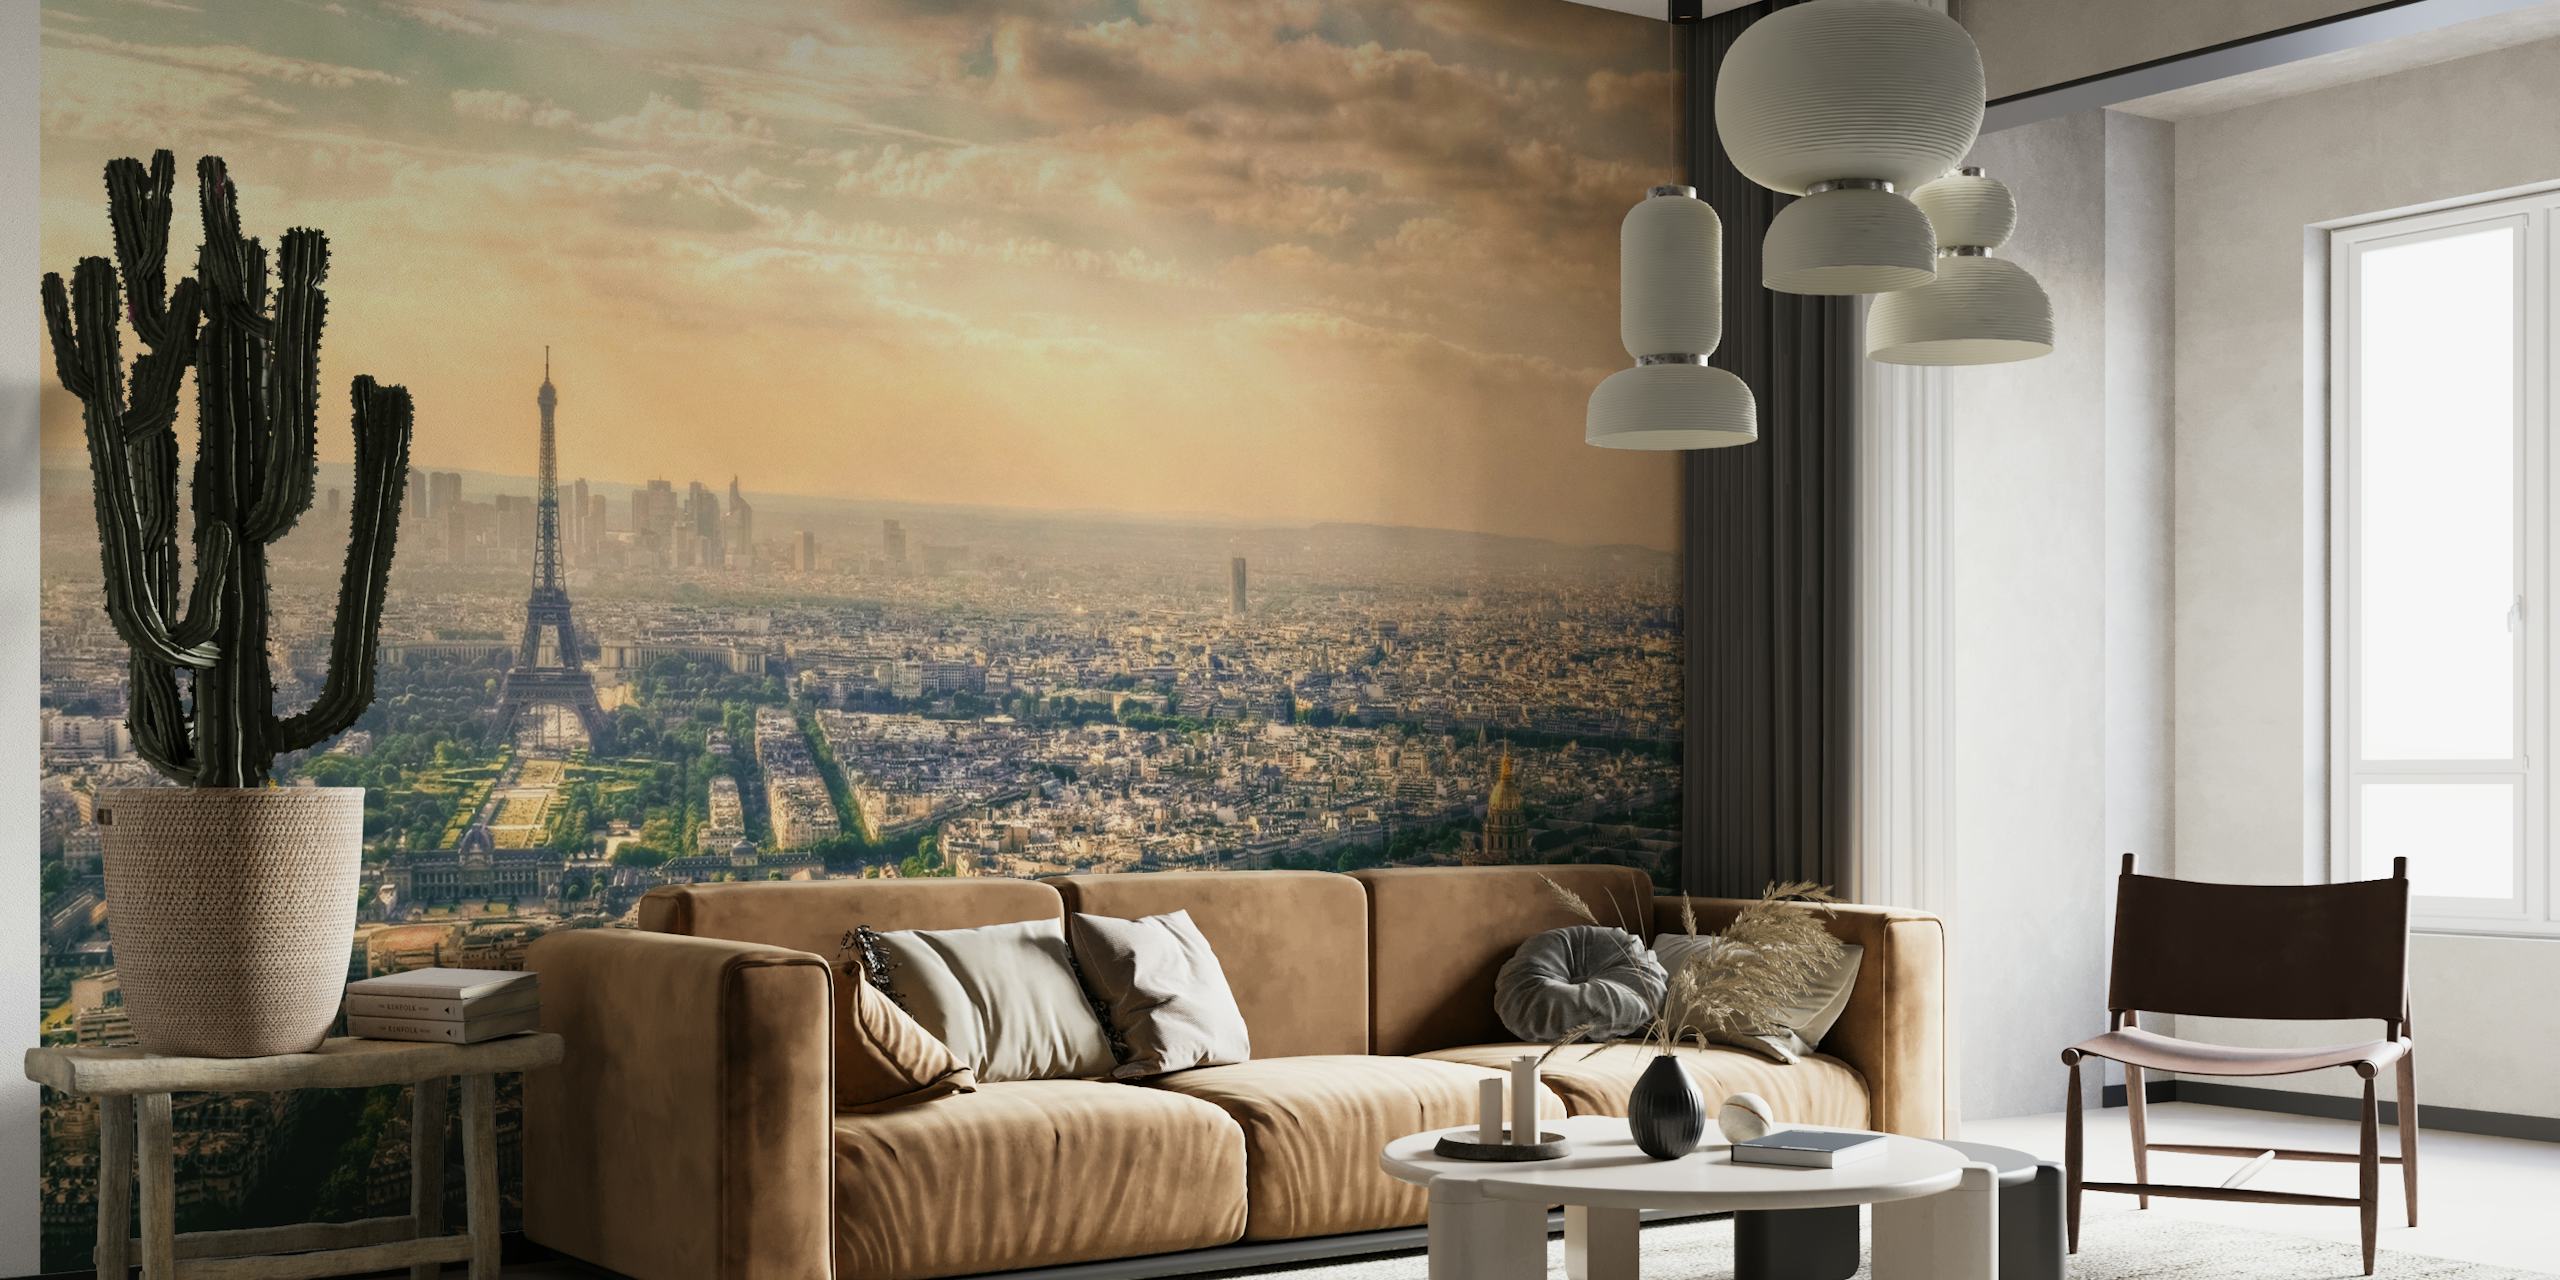 Muurschildering Parijs, Frankrijk met de Eiffeltoren en stadsgezicht